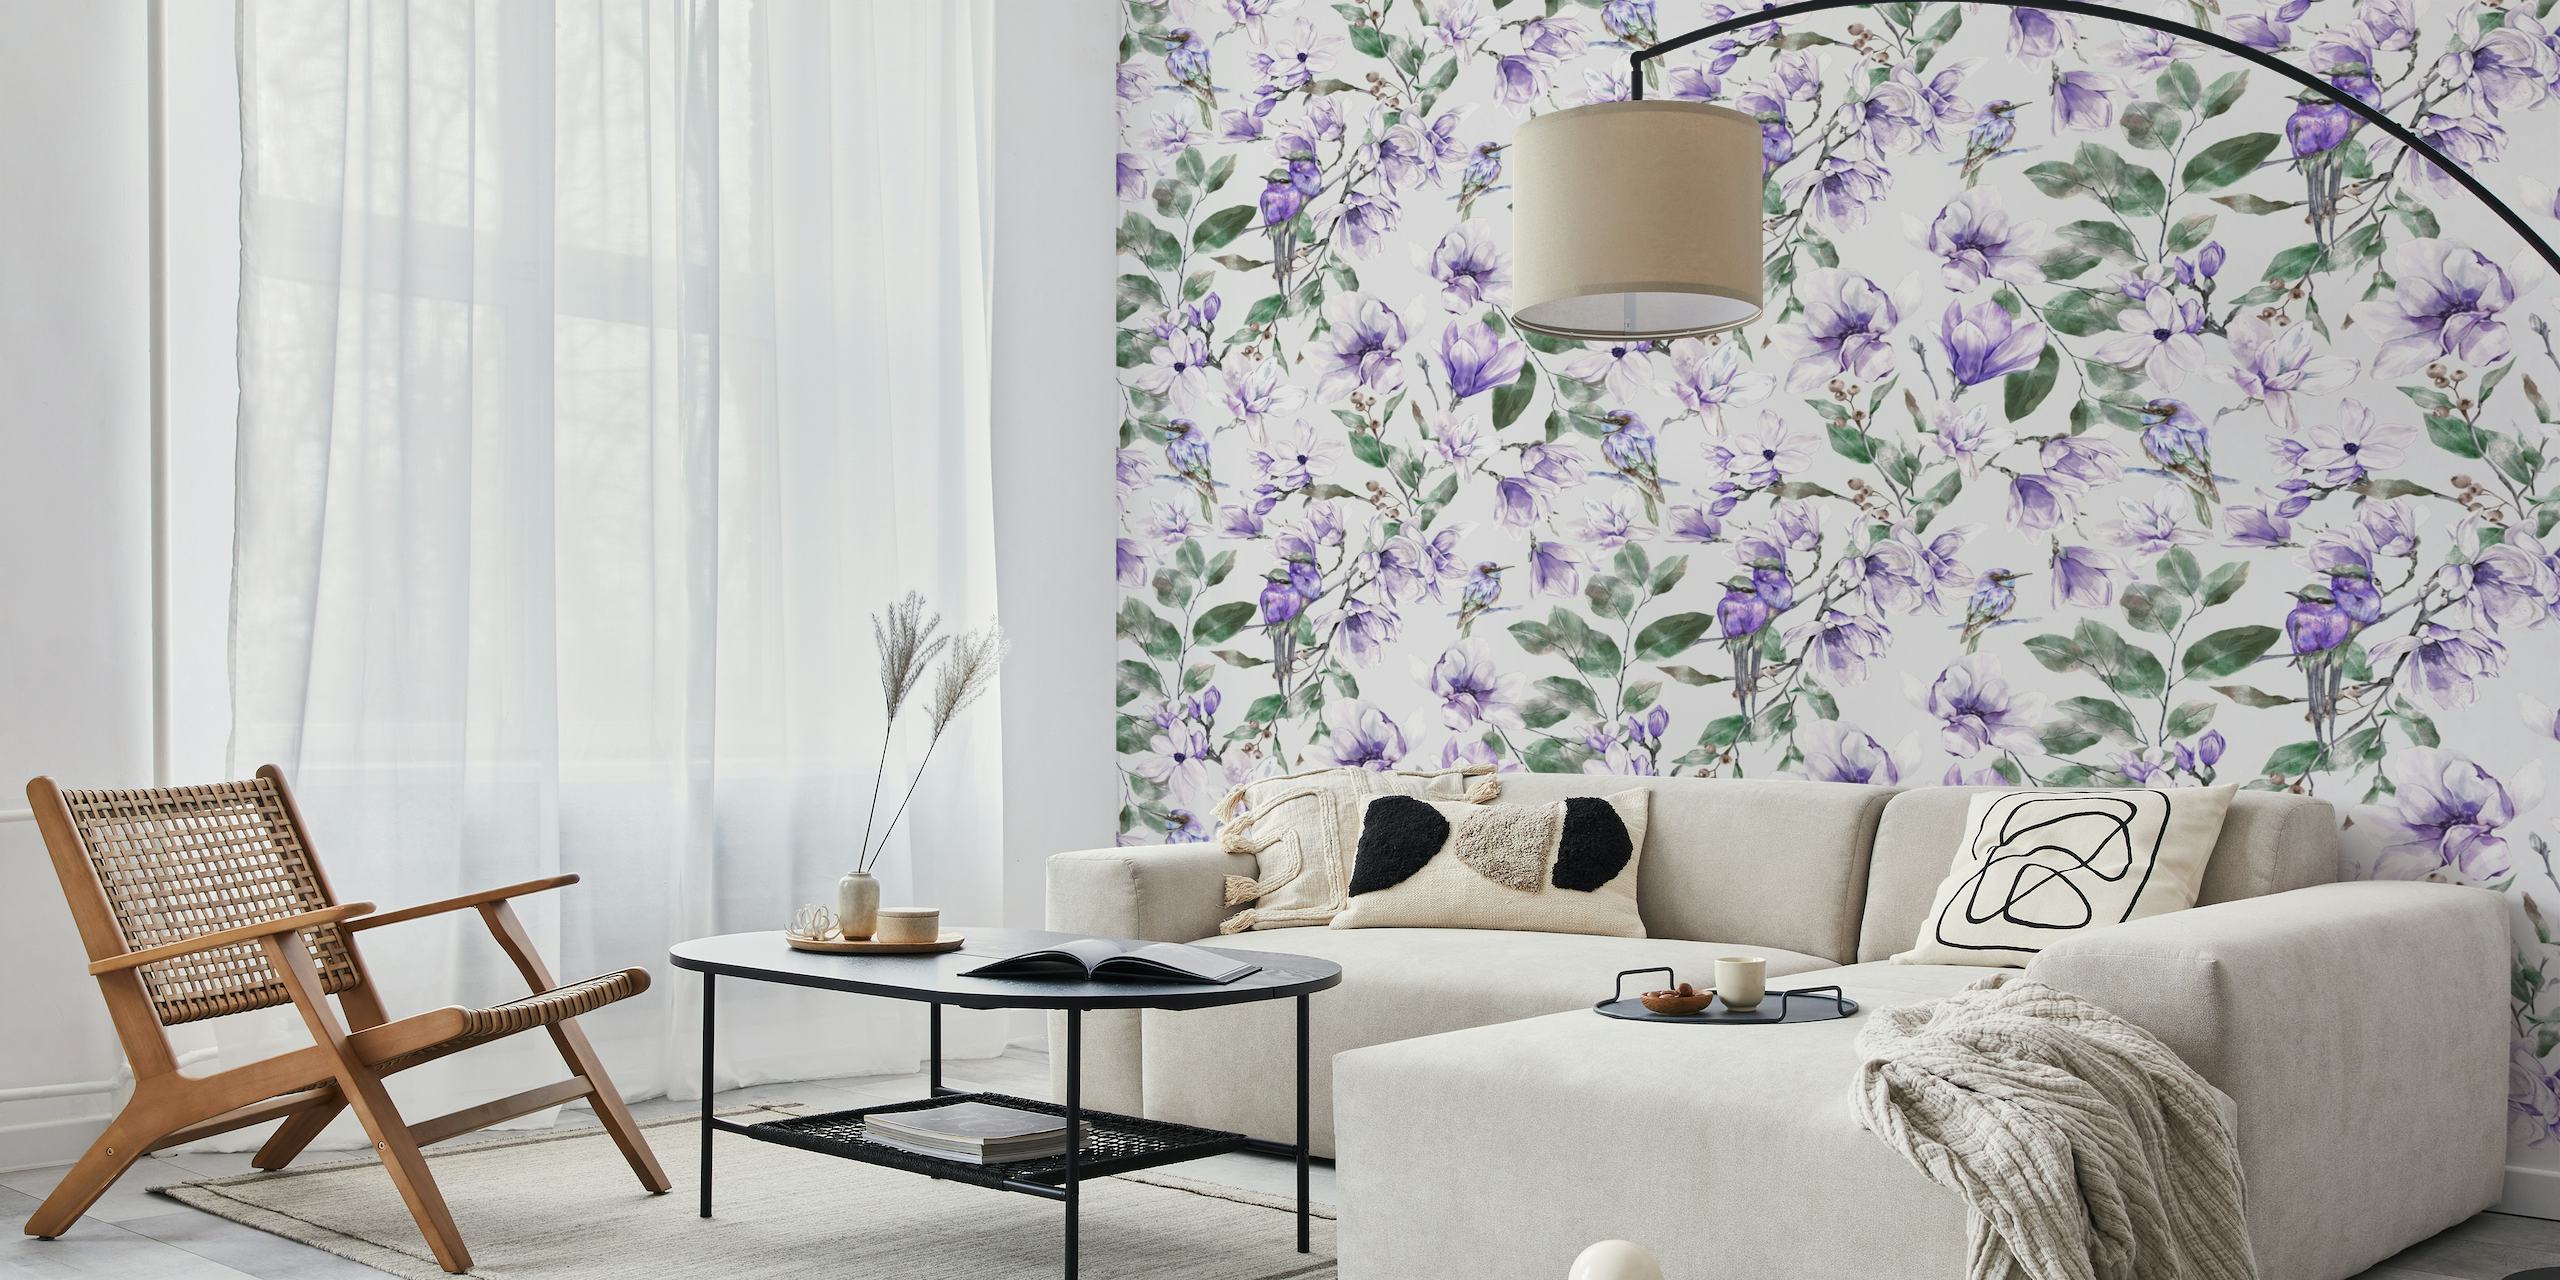 Asian Violet 1 fotobehang met delicate paarse bloemen en groene bladeren op een lichte achtergrond